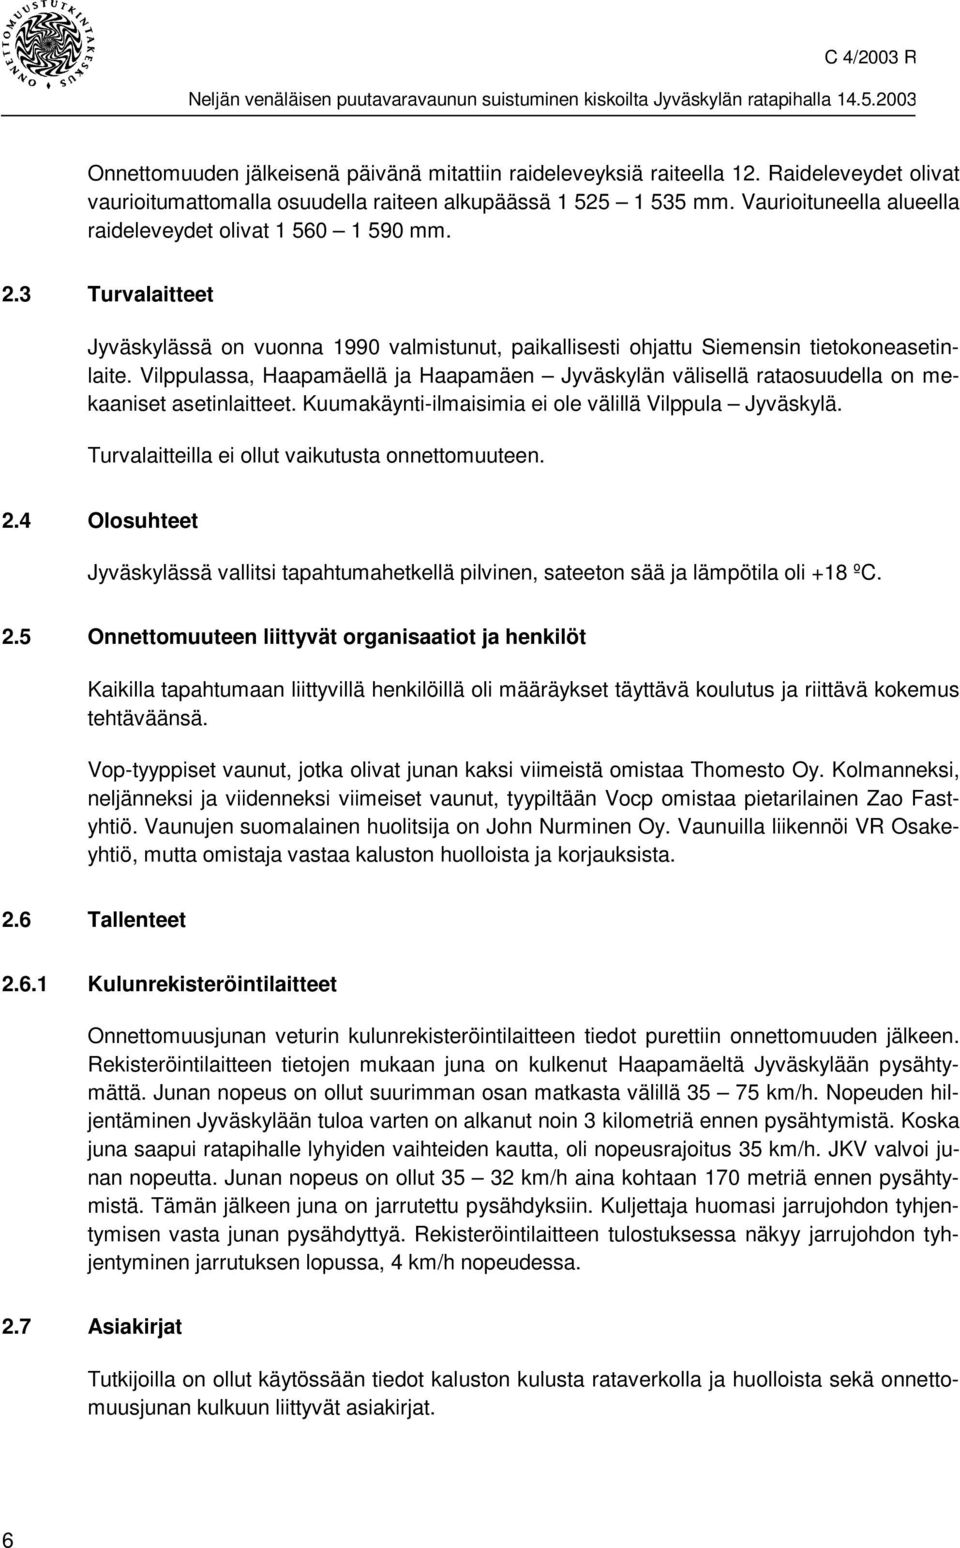 Vilppulassa, Haapamäellä ja Haapamäen Jyväskylän välisellä rataosuudella on mekaaniset asetinlaitteet. Kuumakäynti-ilmaisimia ei ole välillä Vilppula Jyväskylä.